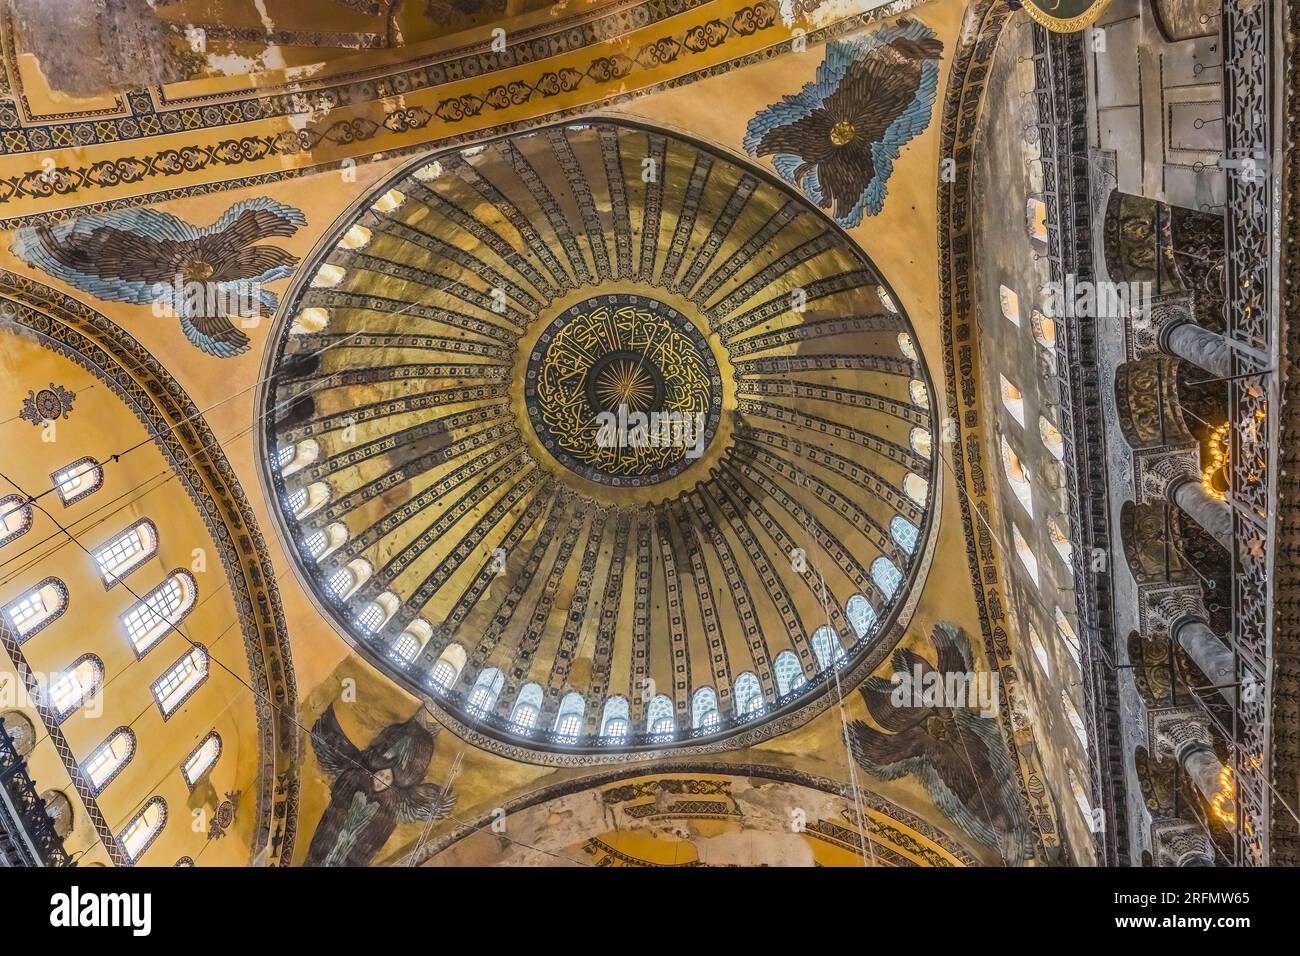 Hagia Sophia Mosque Basilica Dome Istanbul Turkey. Emperor Justinian ...